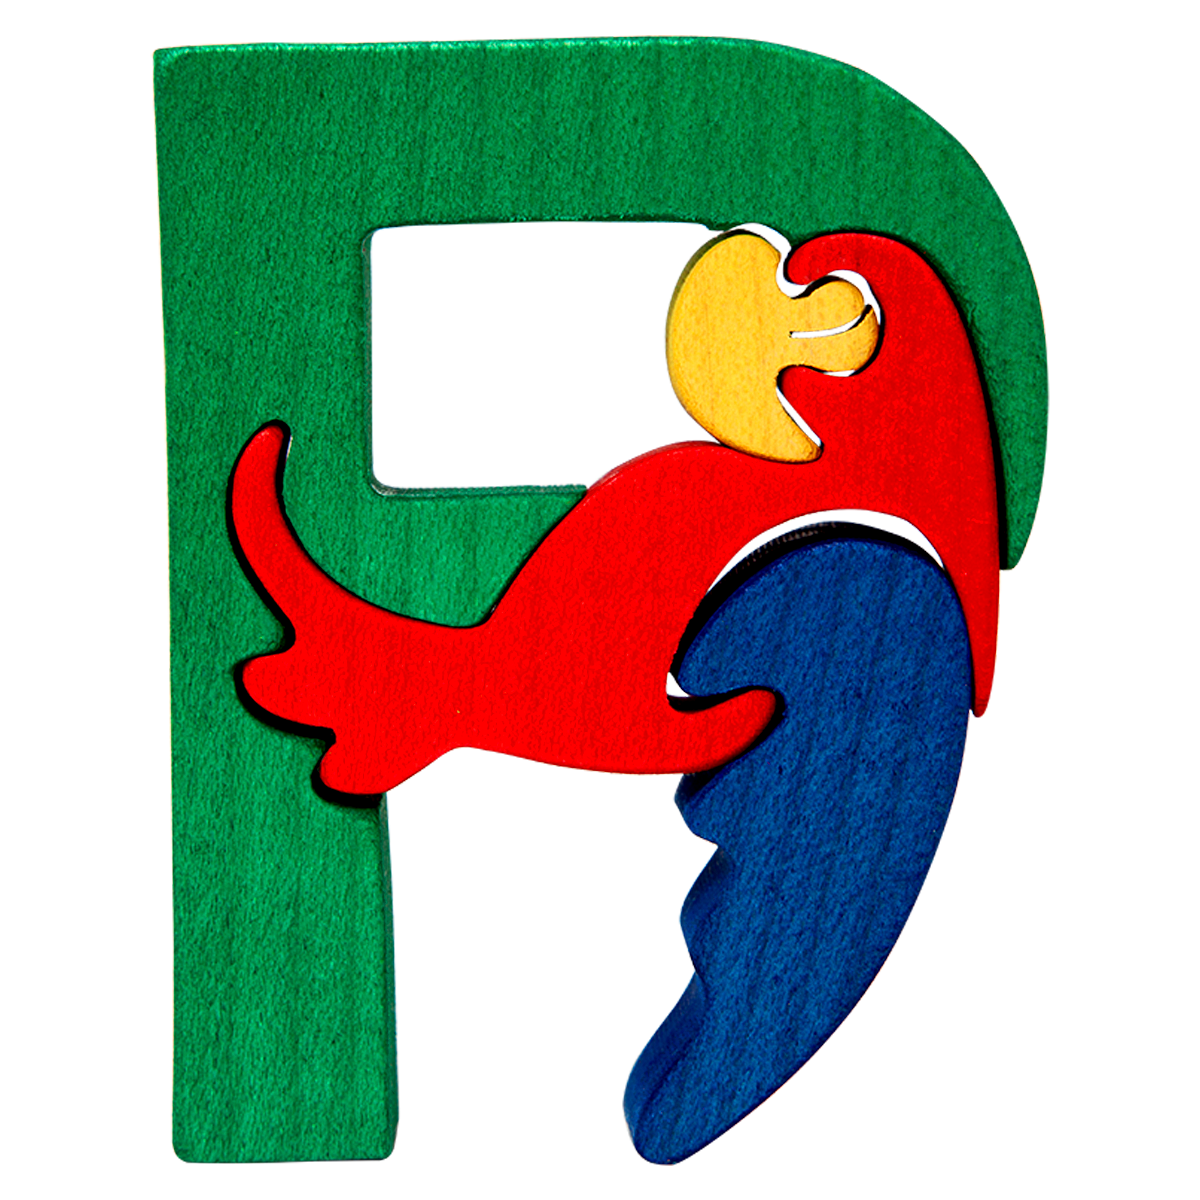 P - parrot